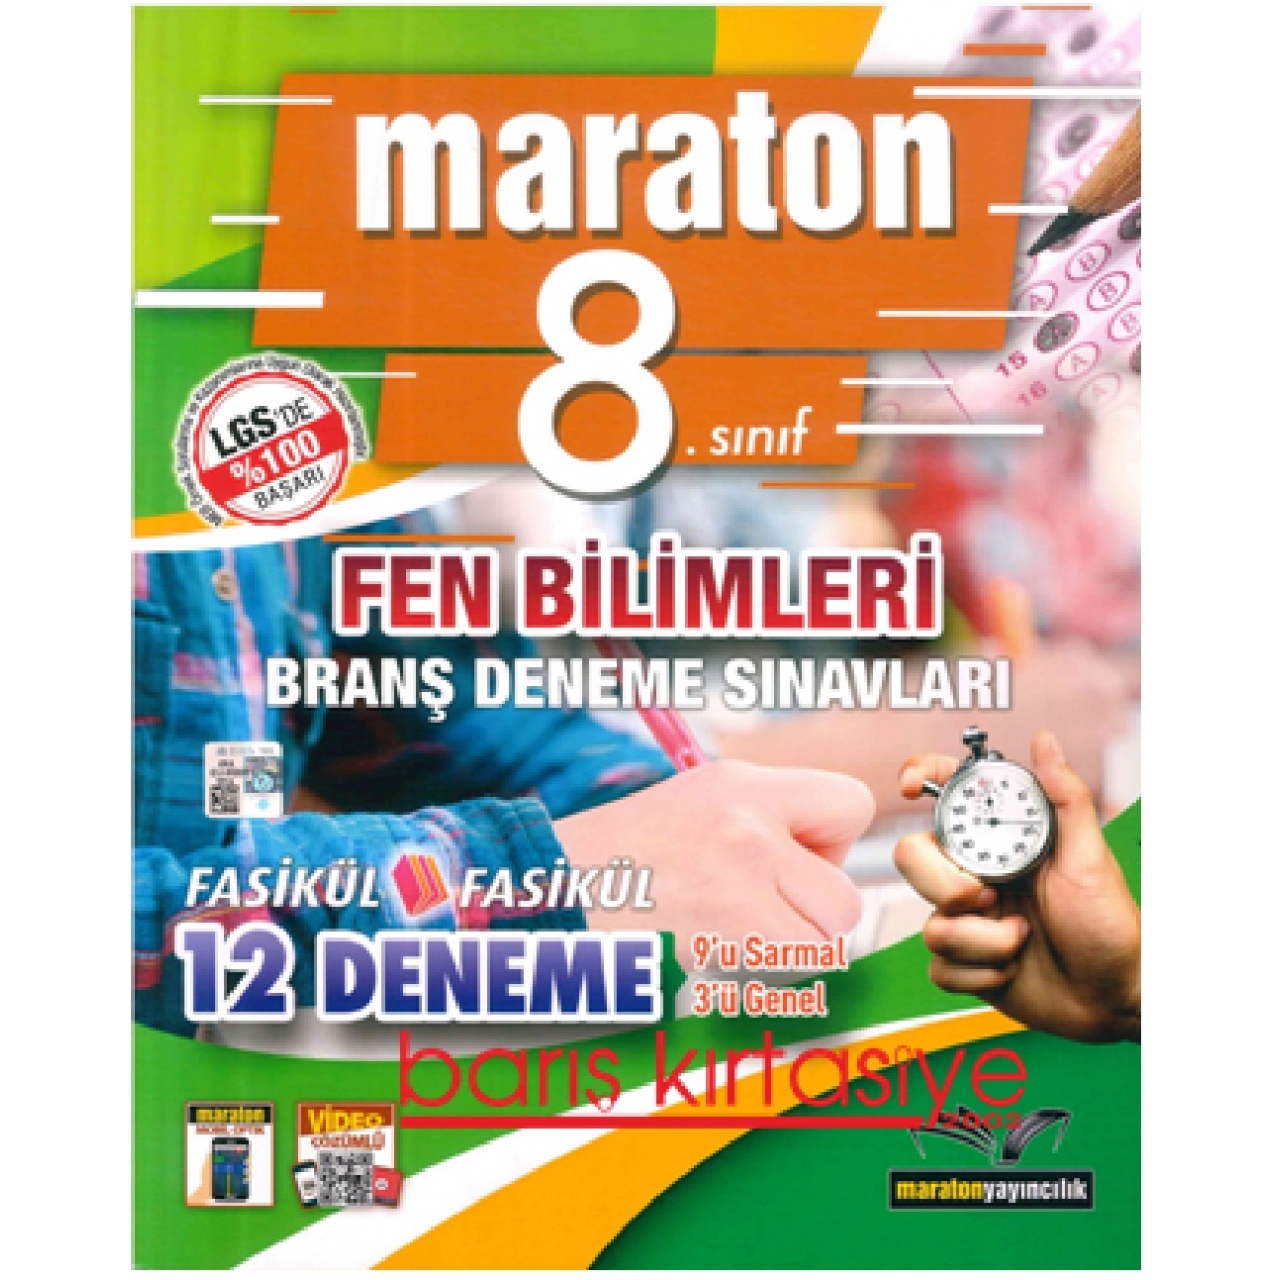 8. Sınıf Fen Bilimleri Branş Denemeleri Maraton Yayıncılık